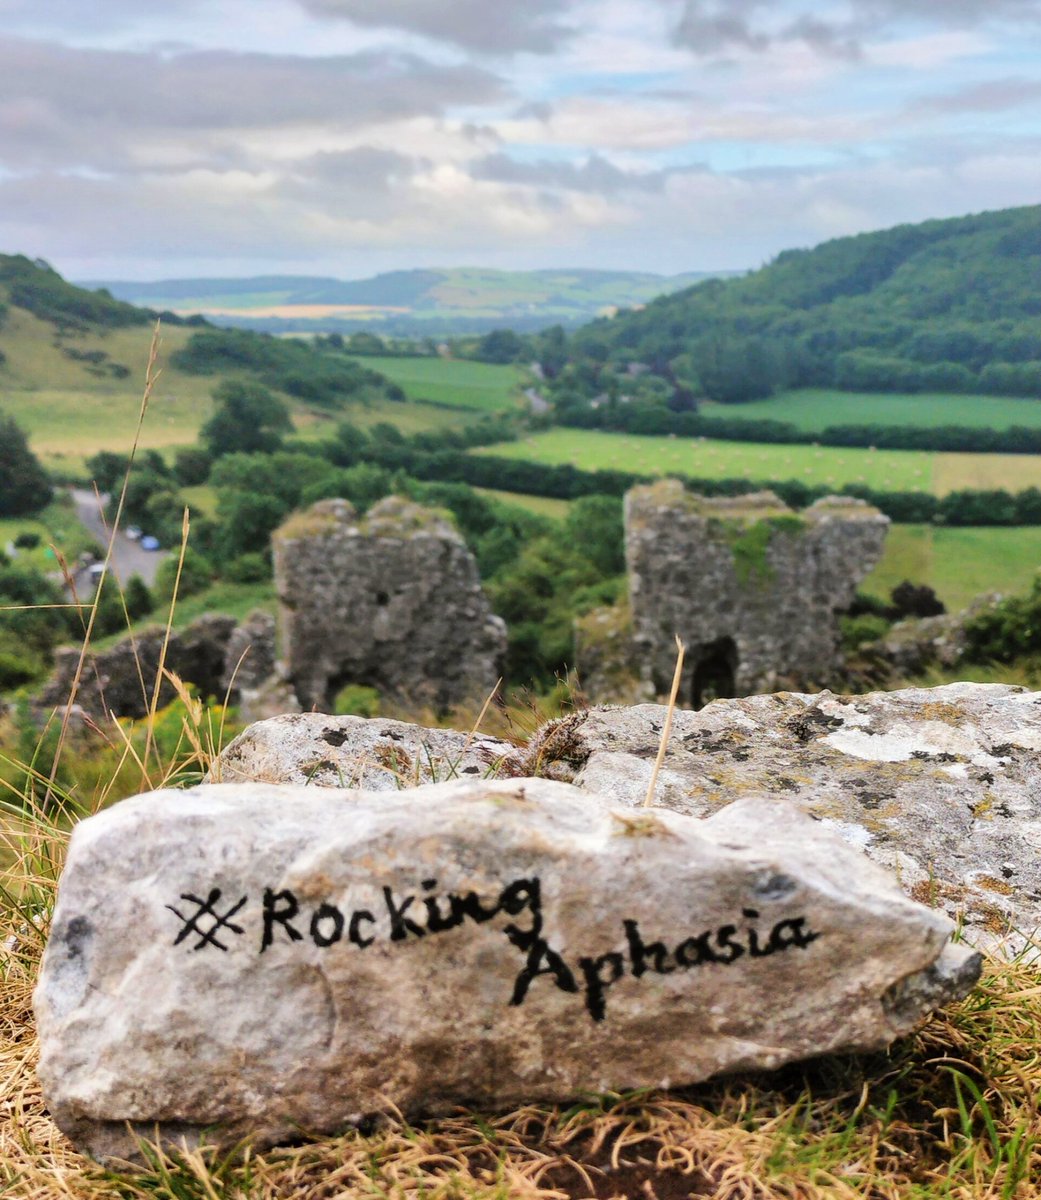 #RockingAphasia at the #RockOfDunamase, #Laois, Ireland 🪨🏰

#AphasiaAwarenessMonth
@ARCaphasia @AphasiaIcafe @abracabadger